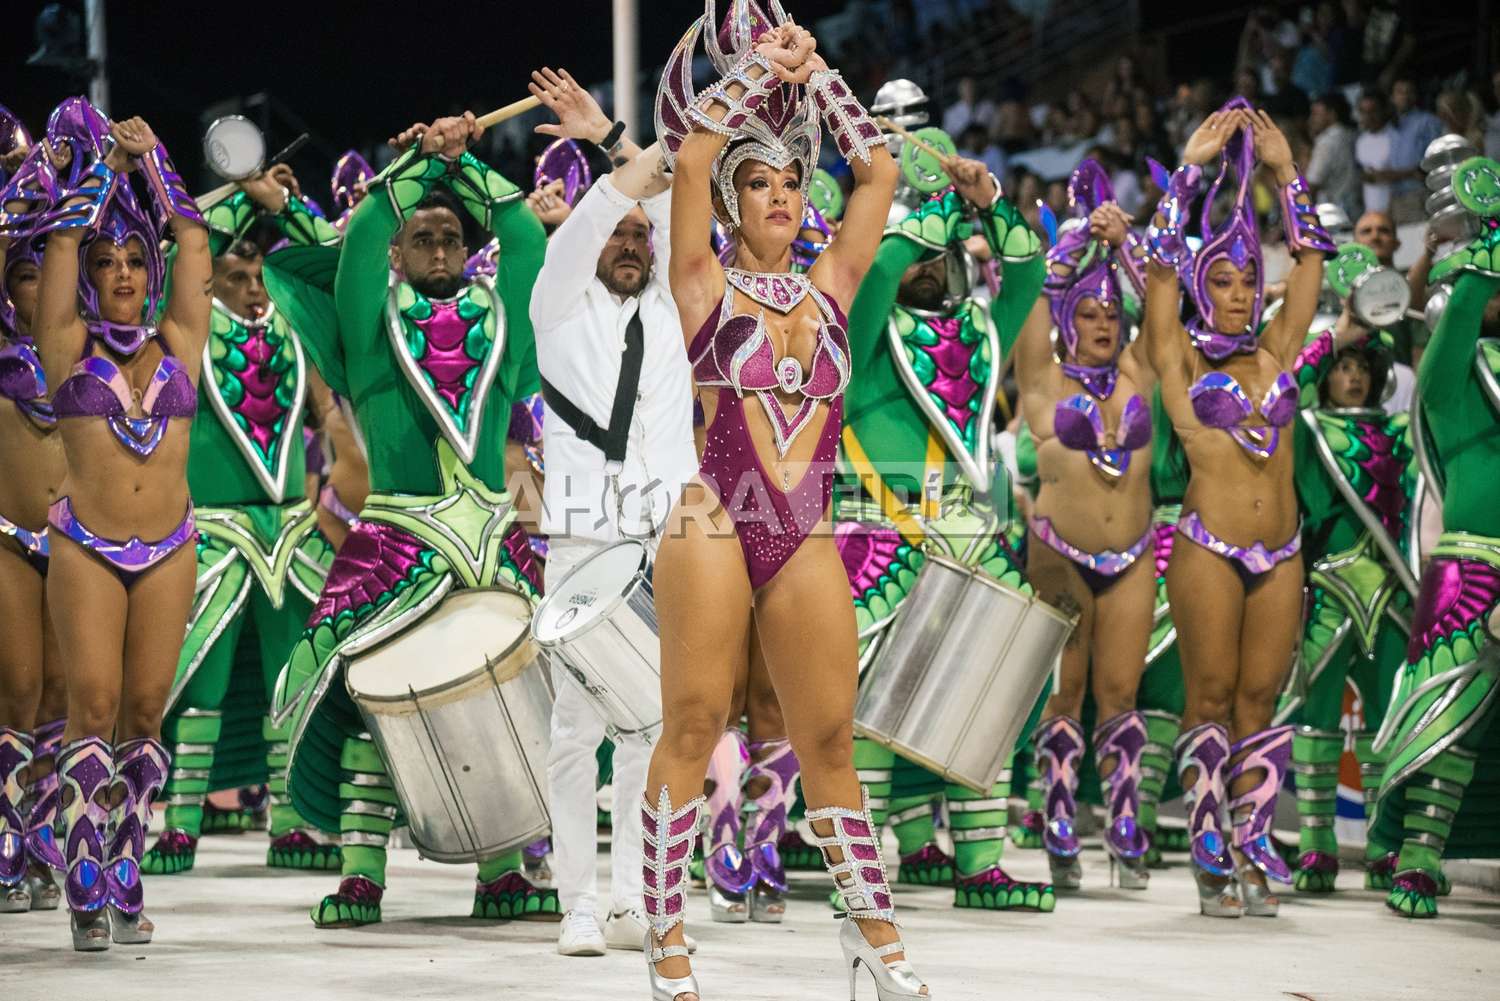 Gualeguaychú a pleno Carnaval: Se fue la octava noche y la fiesta continúa este lunes